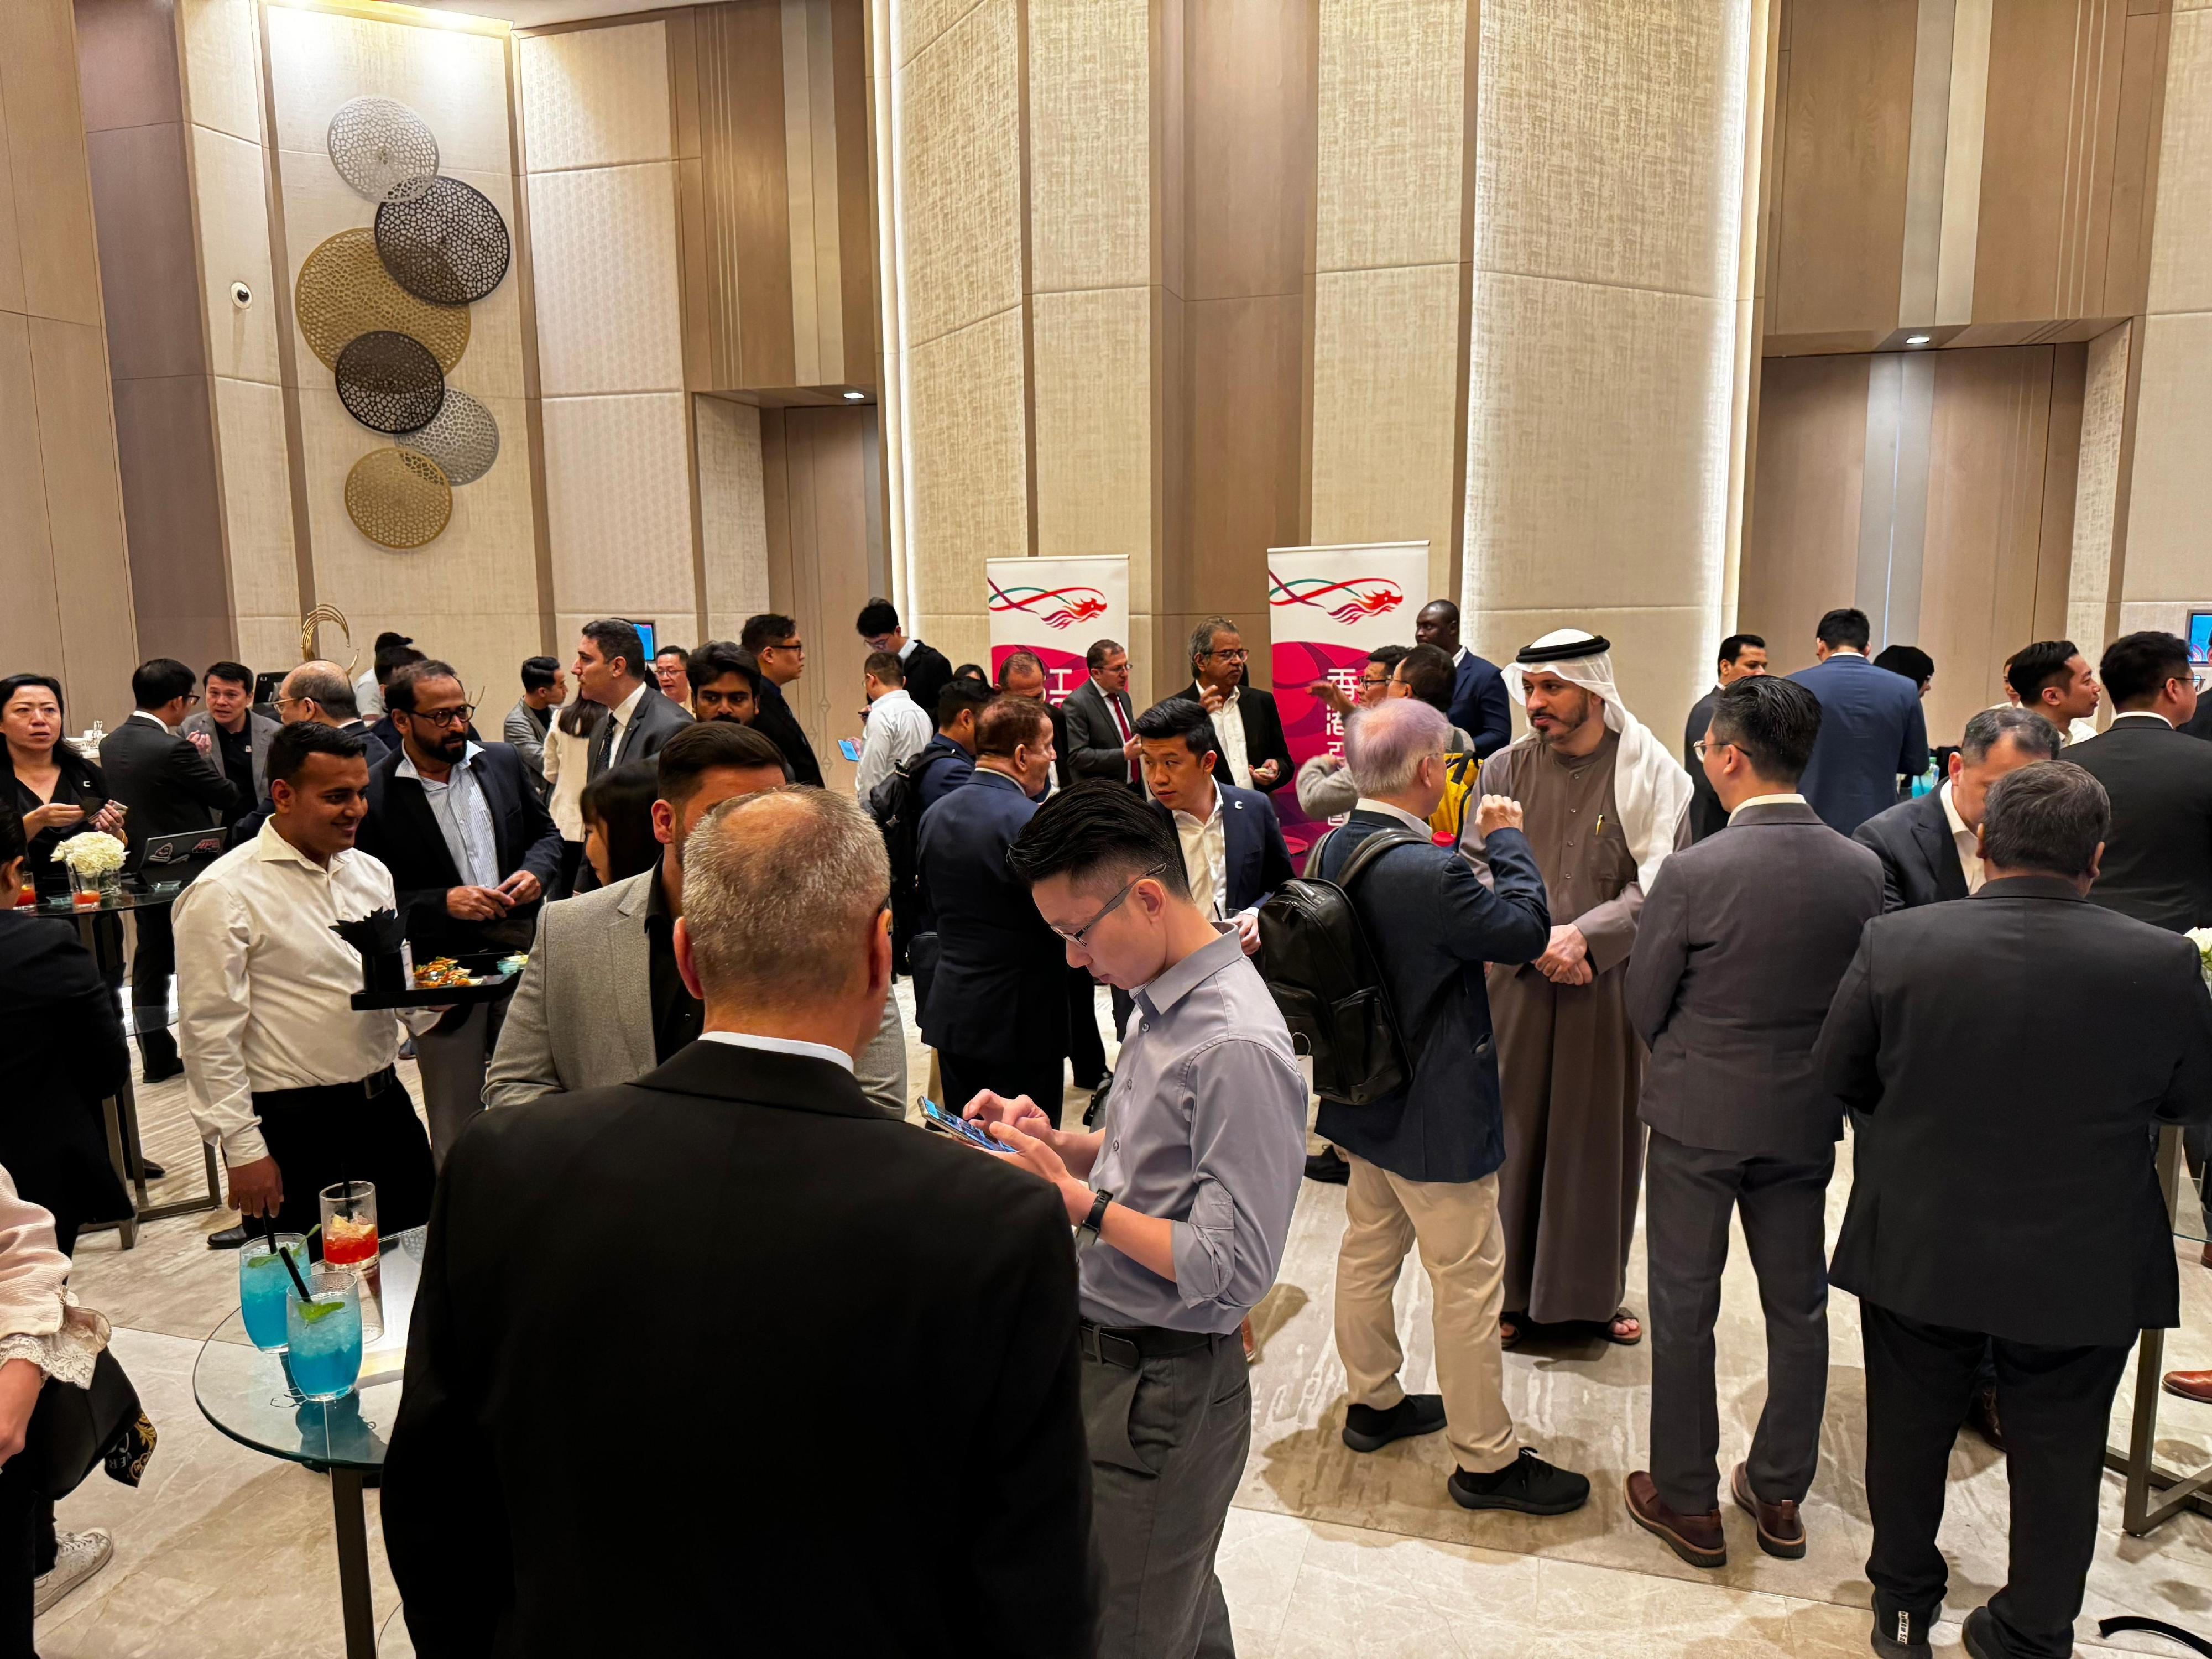 香港駐迪拜經濟貿易辦事處三月六日（迪拜時間）在阿拉伯聯合酋長國迪拜舉辦商務午餐會。活動由香港貿易發展局協辦。圖示嘉賓在午宴前交流。